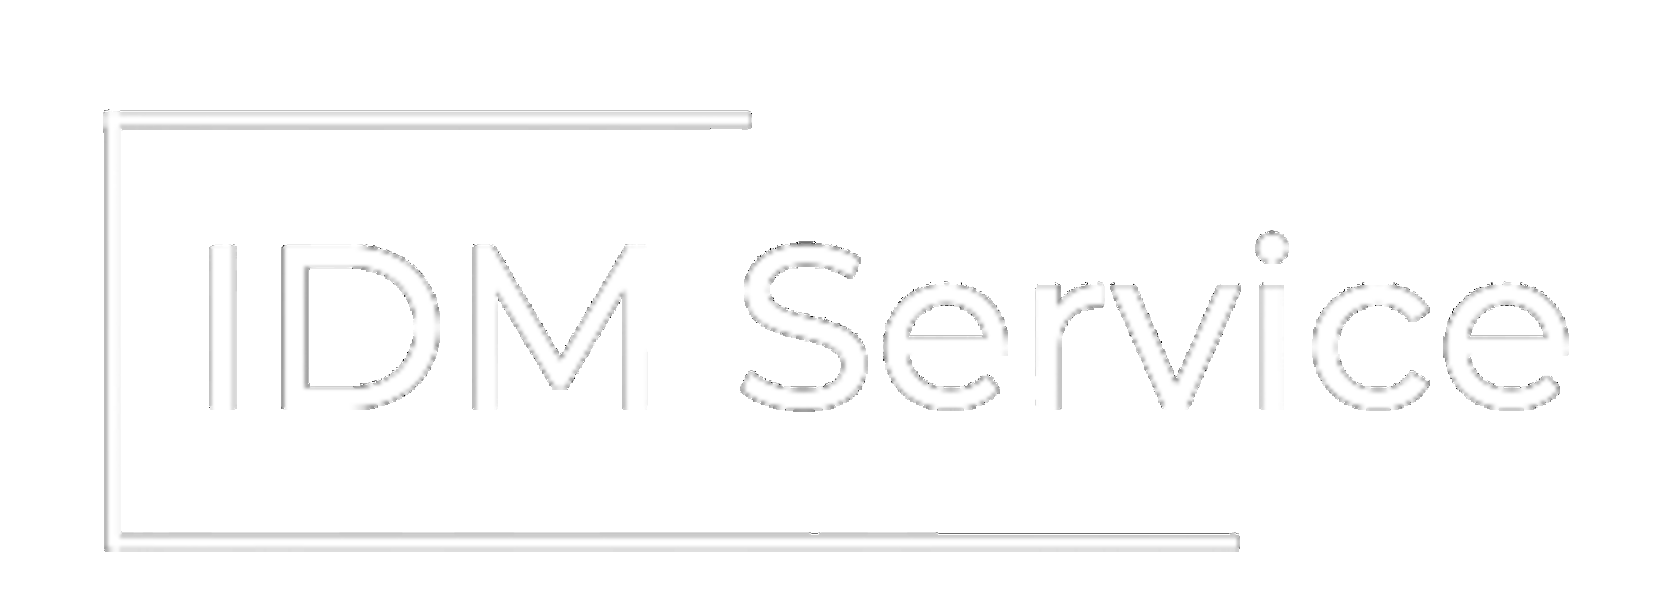 IDM Service